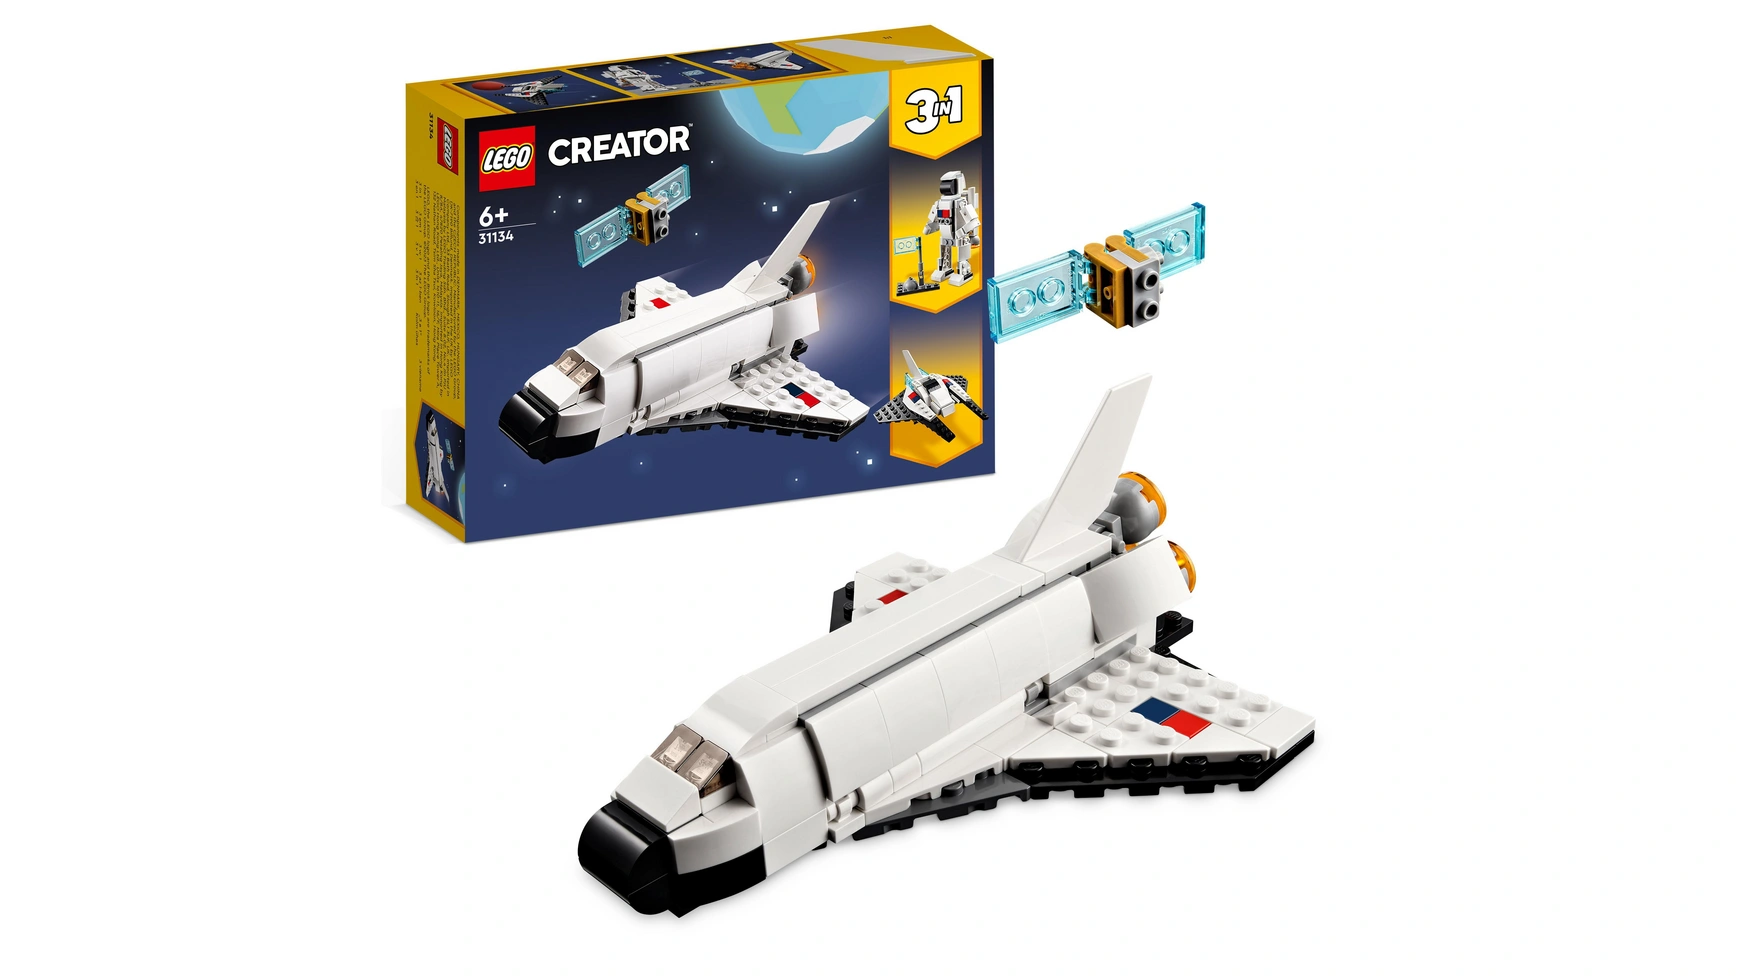 Lego Creator 3in1 Набор игрушек Шаттл и космический корабль конструктор lego creator космический шаттл discovery и телескоп хаббл 2354 дет 10283